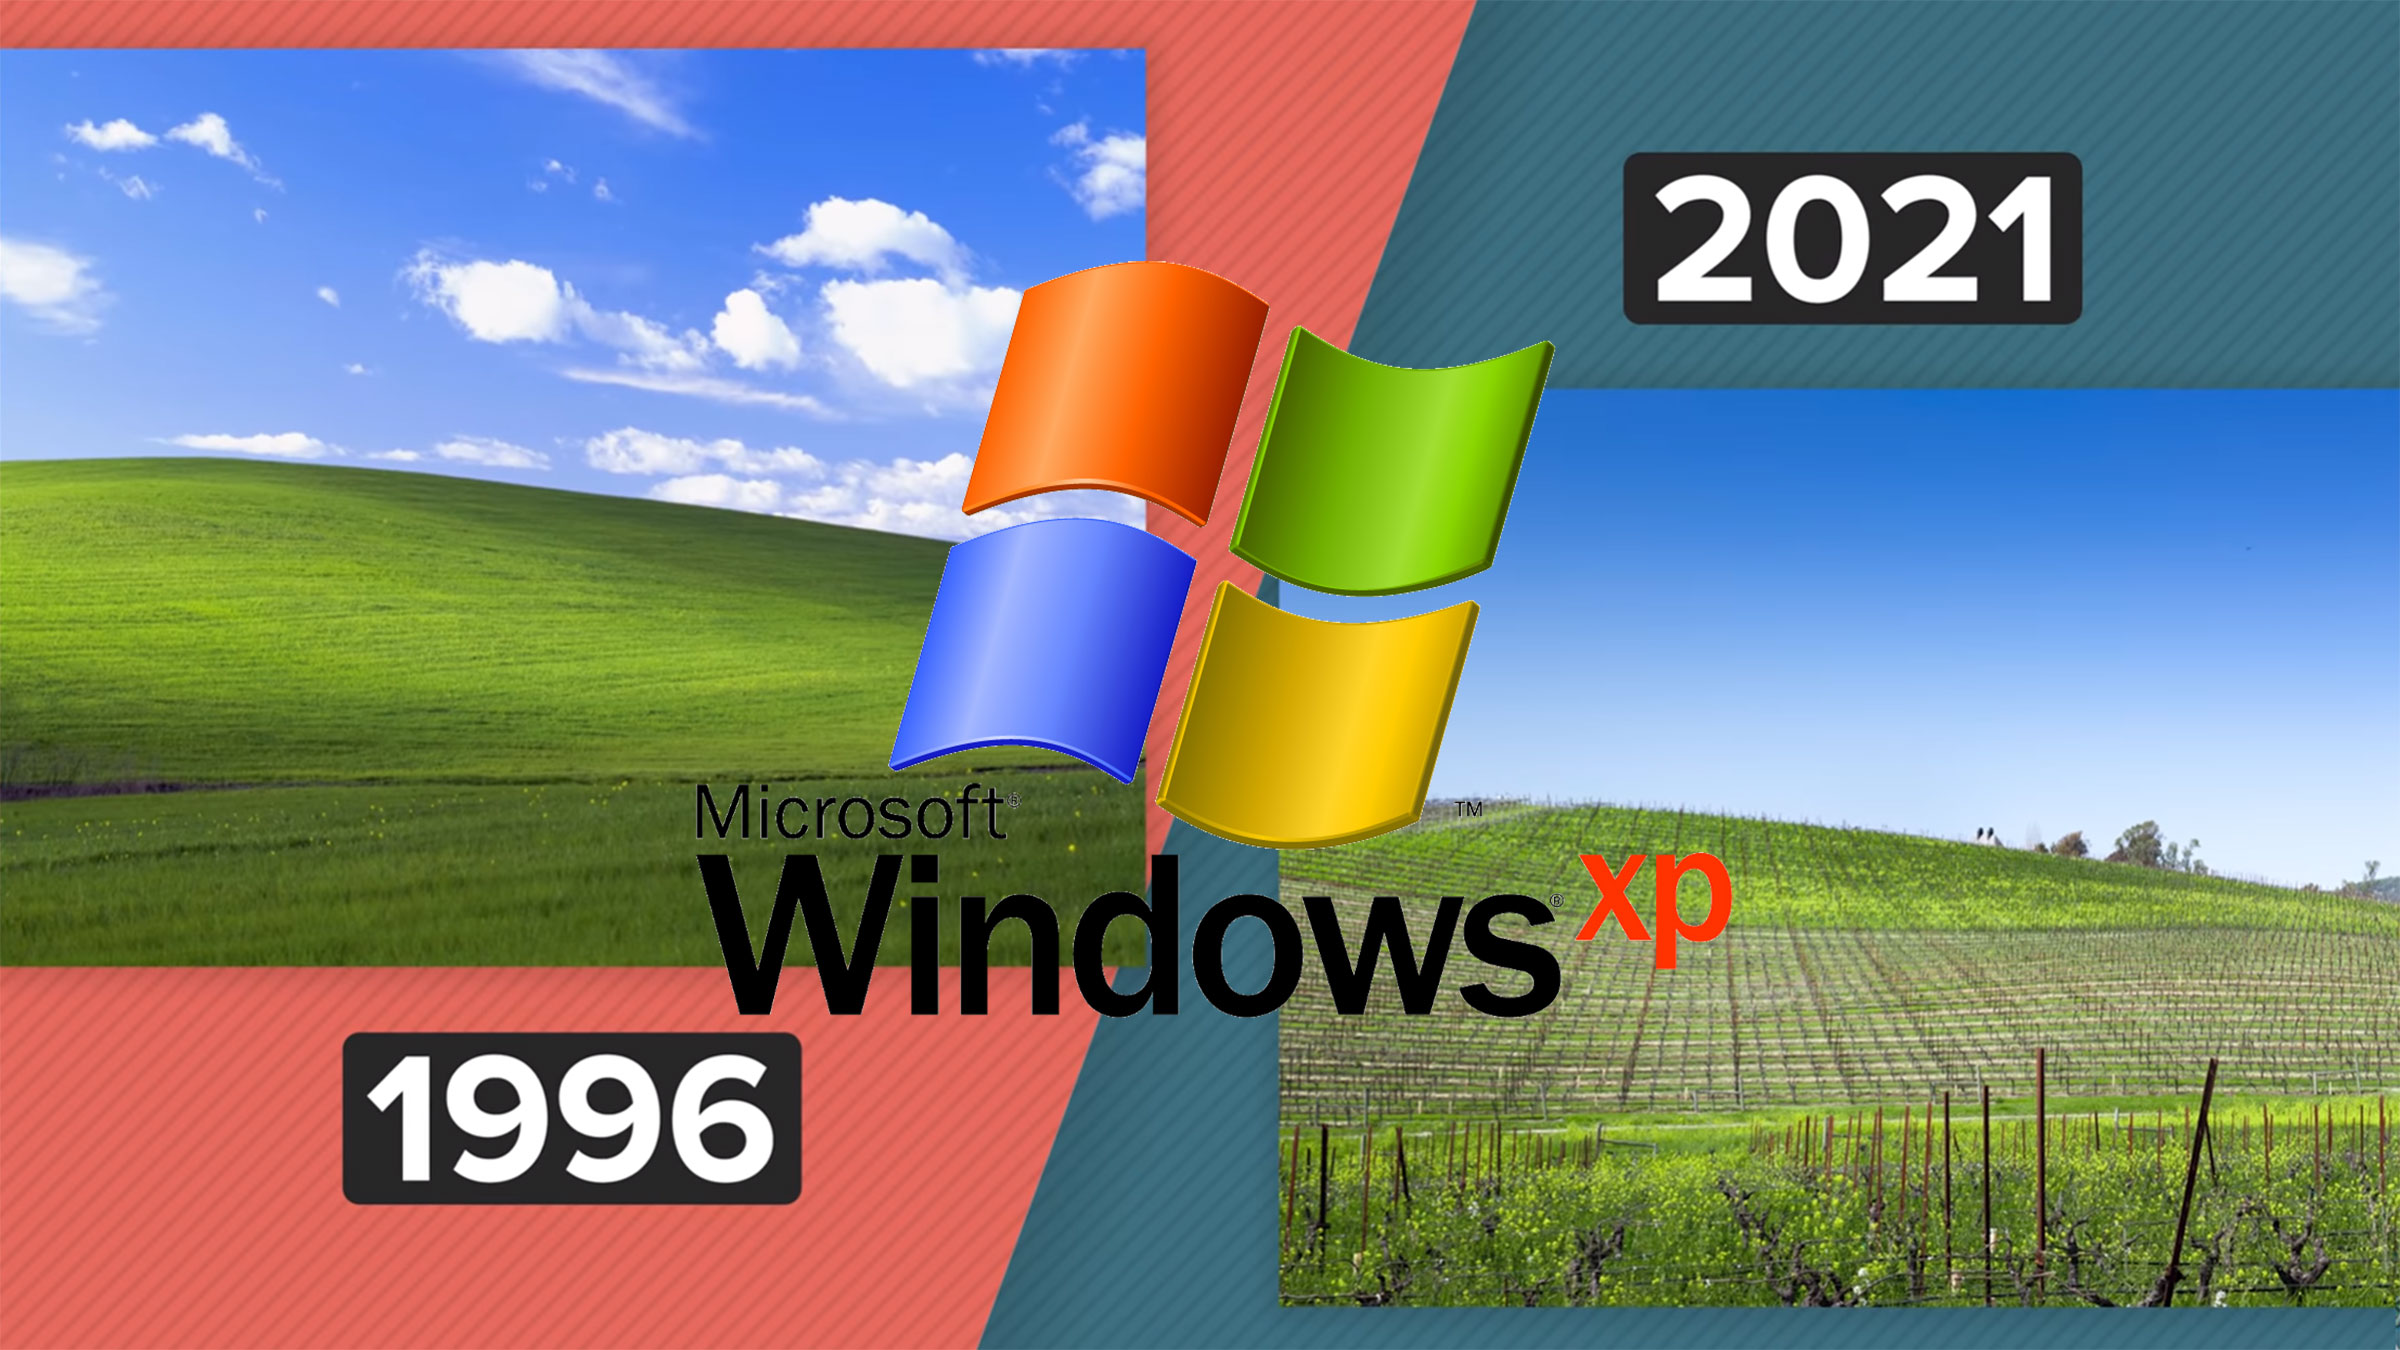 Consiguen volver a fotografiar el mítico fondo de pantalla de Windows XP,  aunque el resultado es decepcionante | Computer Hoy